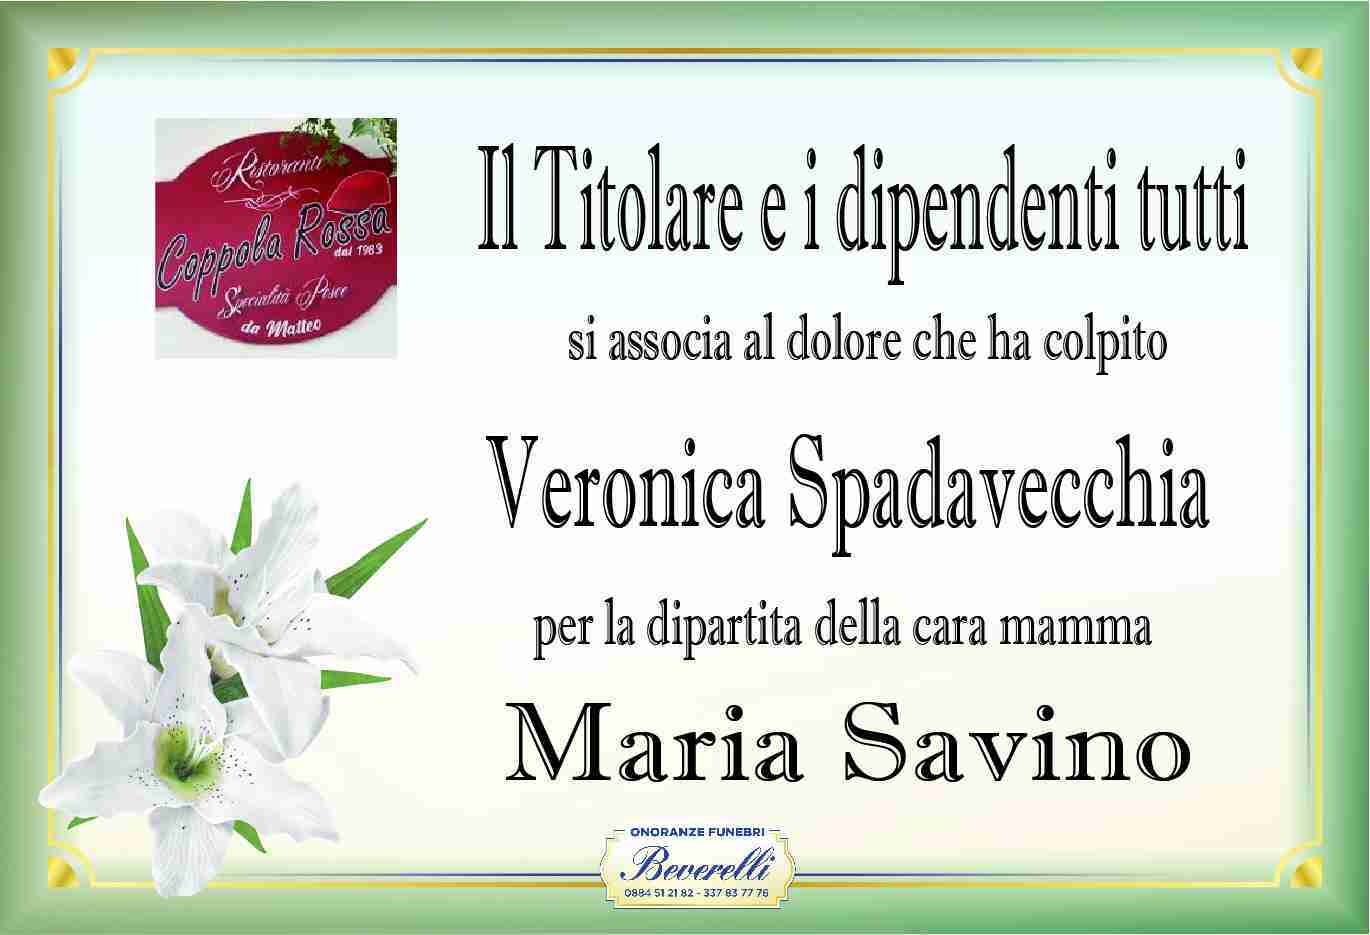 Maria Savino